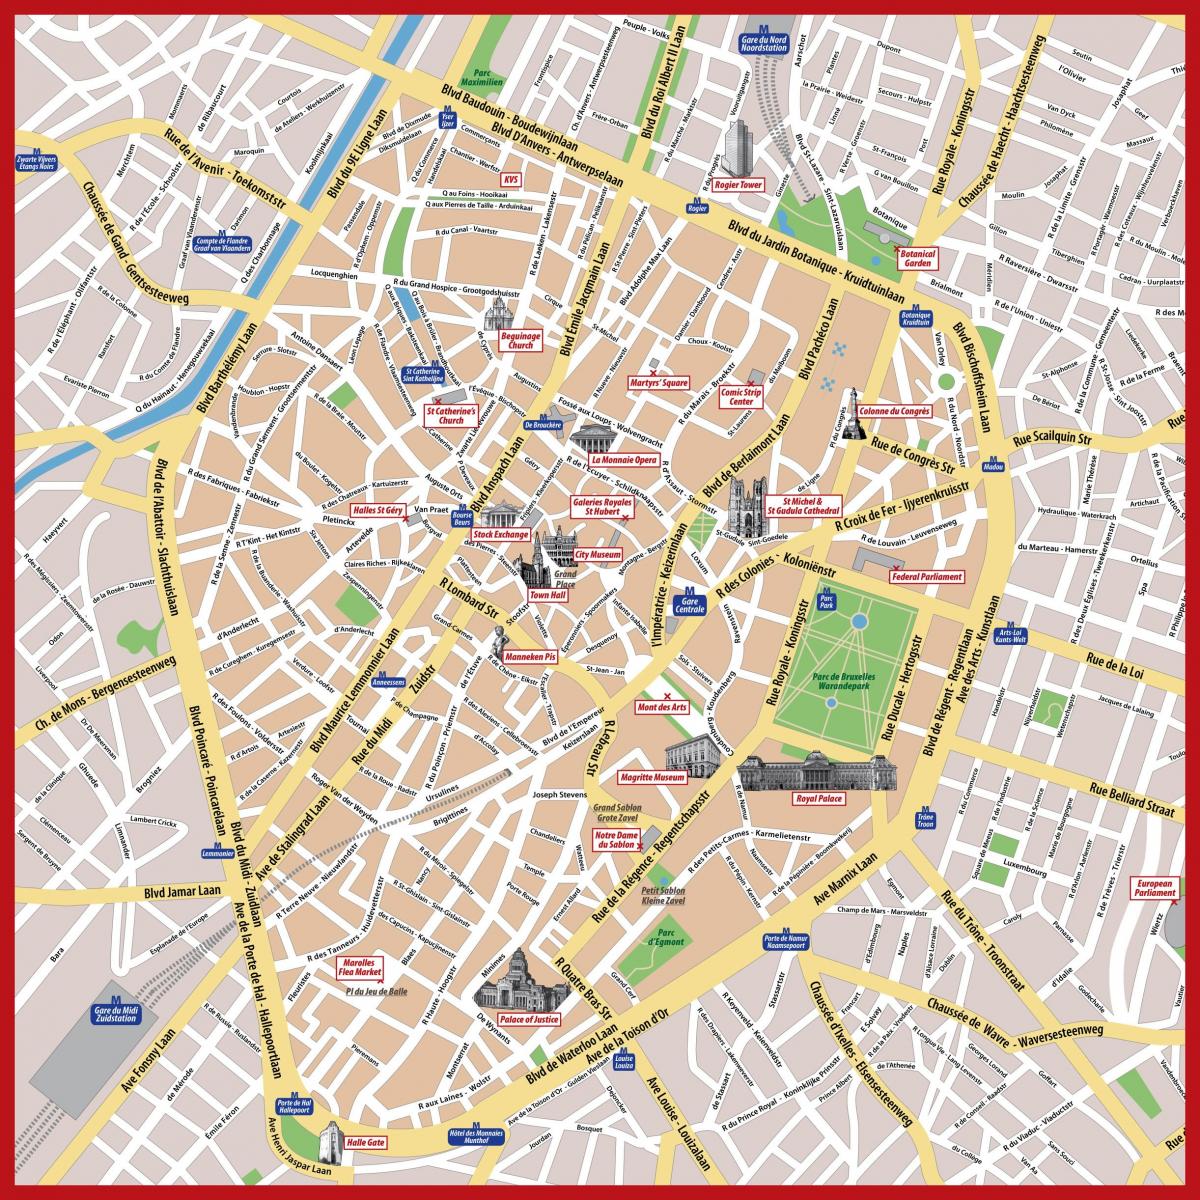 Bruxelles museum map